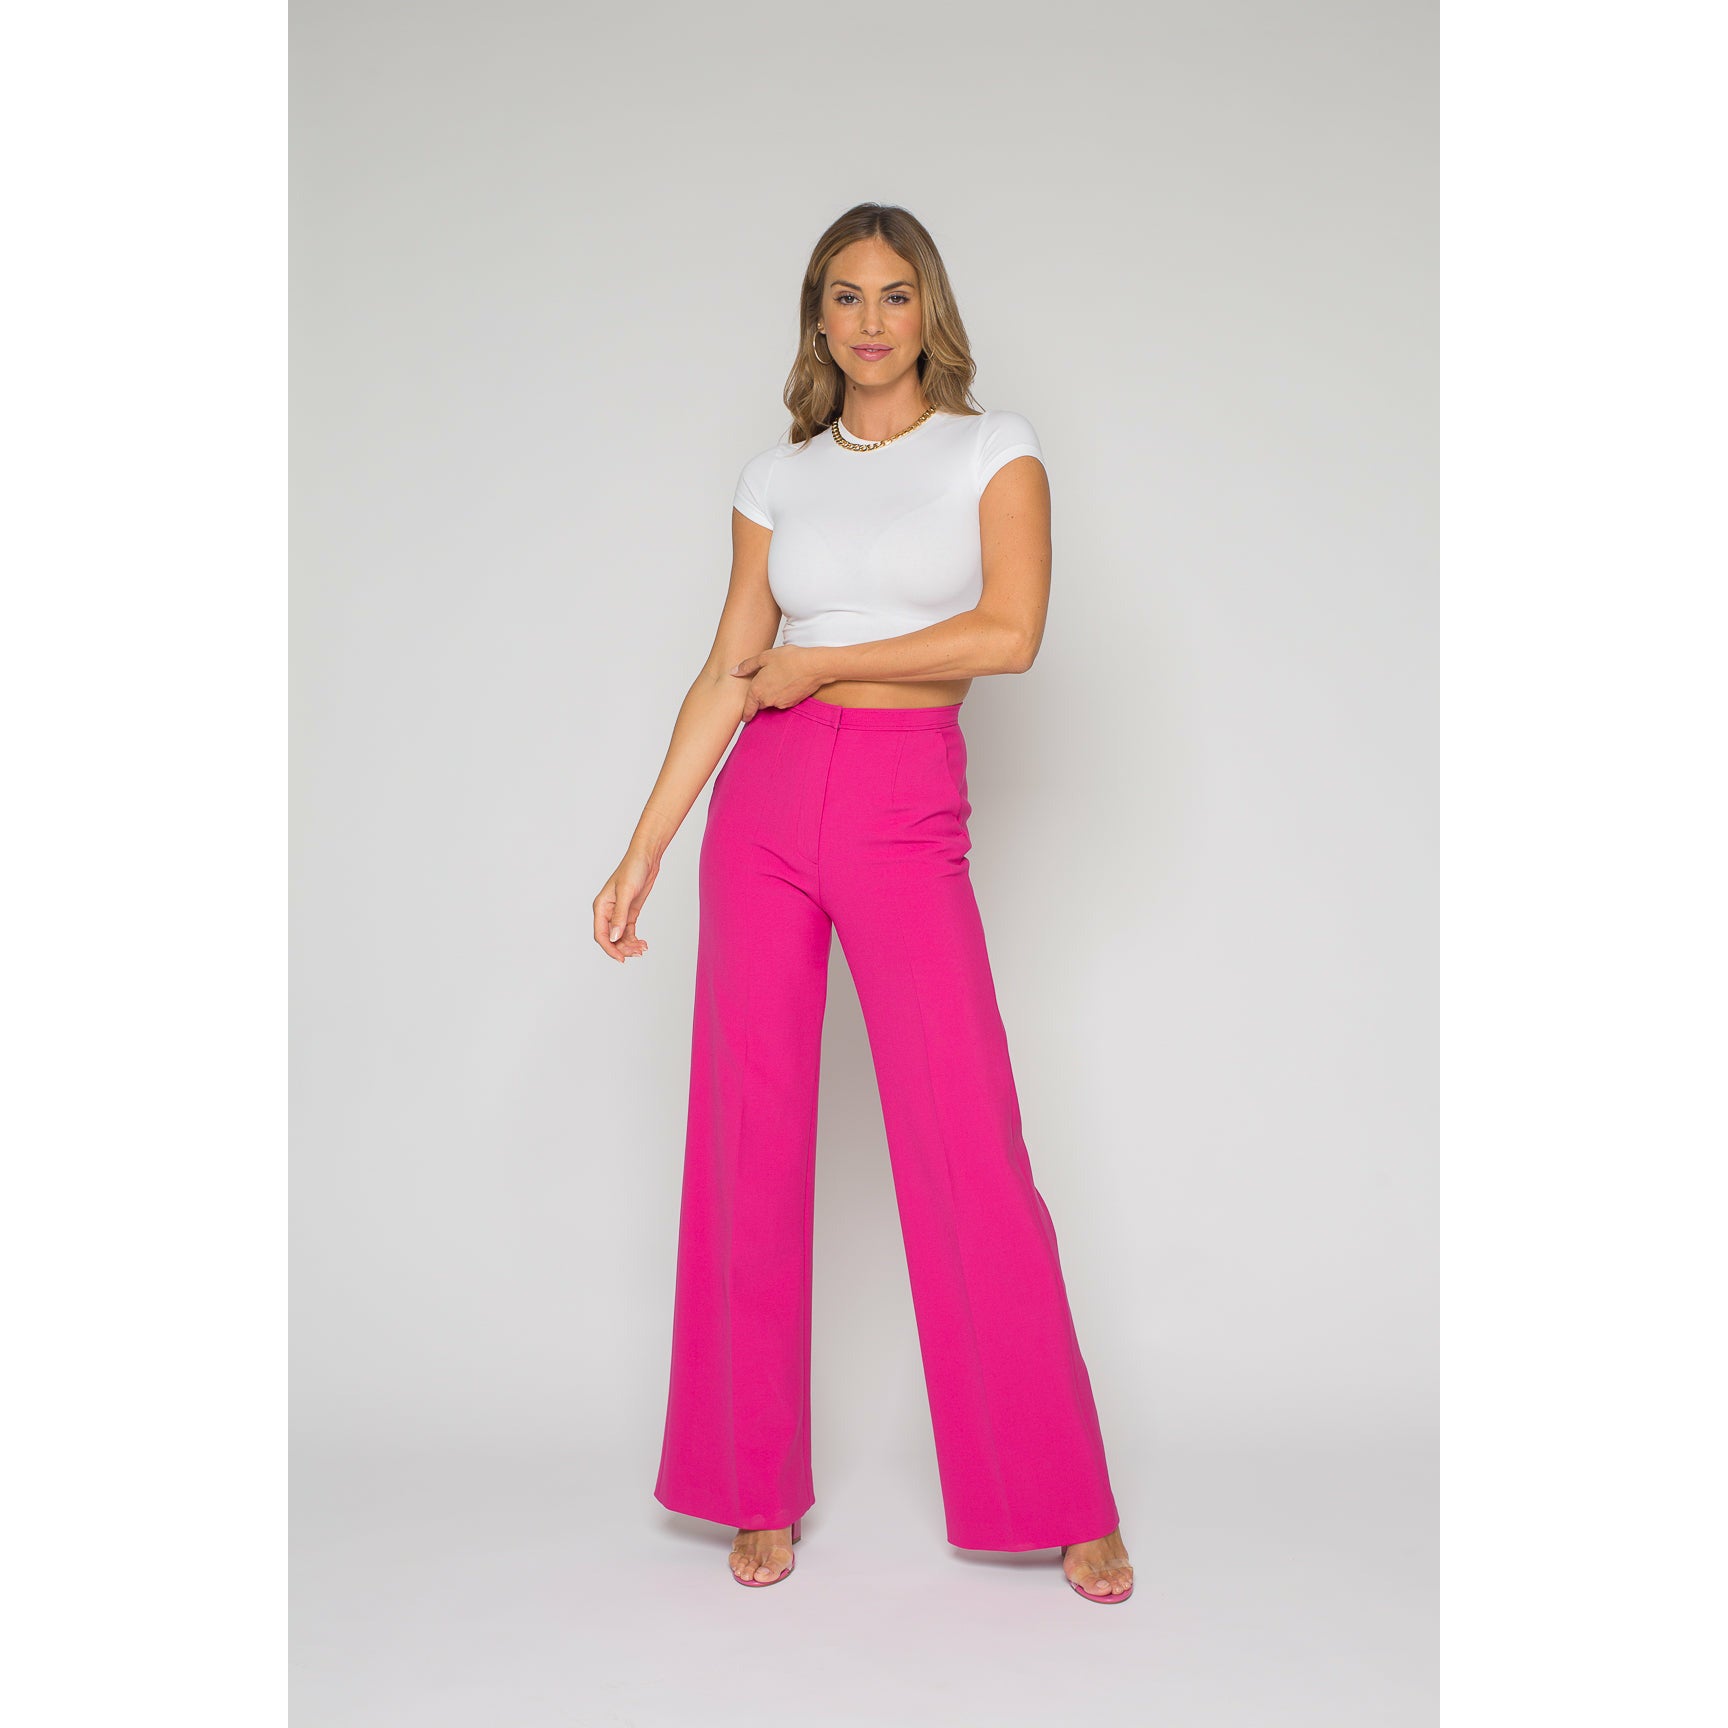 Women's High Waist Zipper Wide Leg Business Pants Hot Pink - Walmart.com